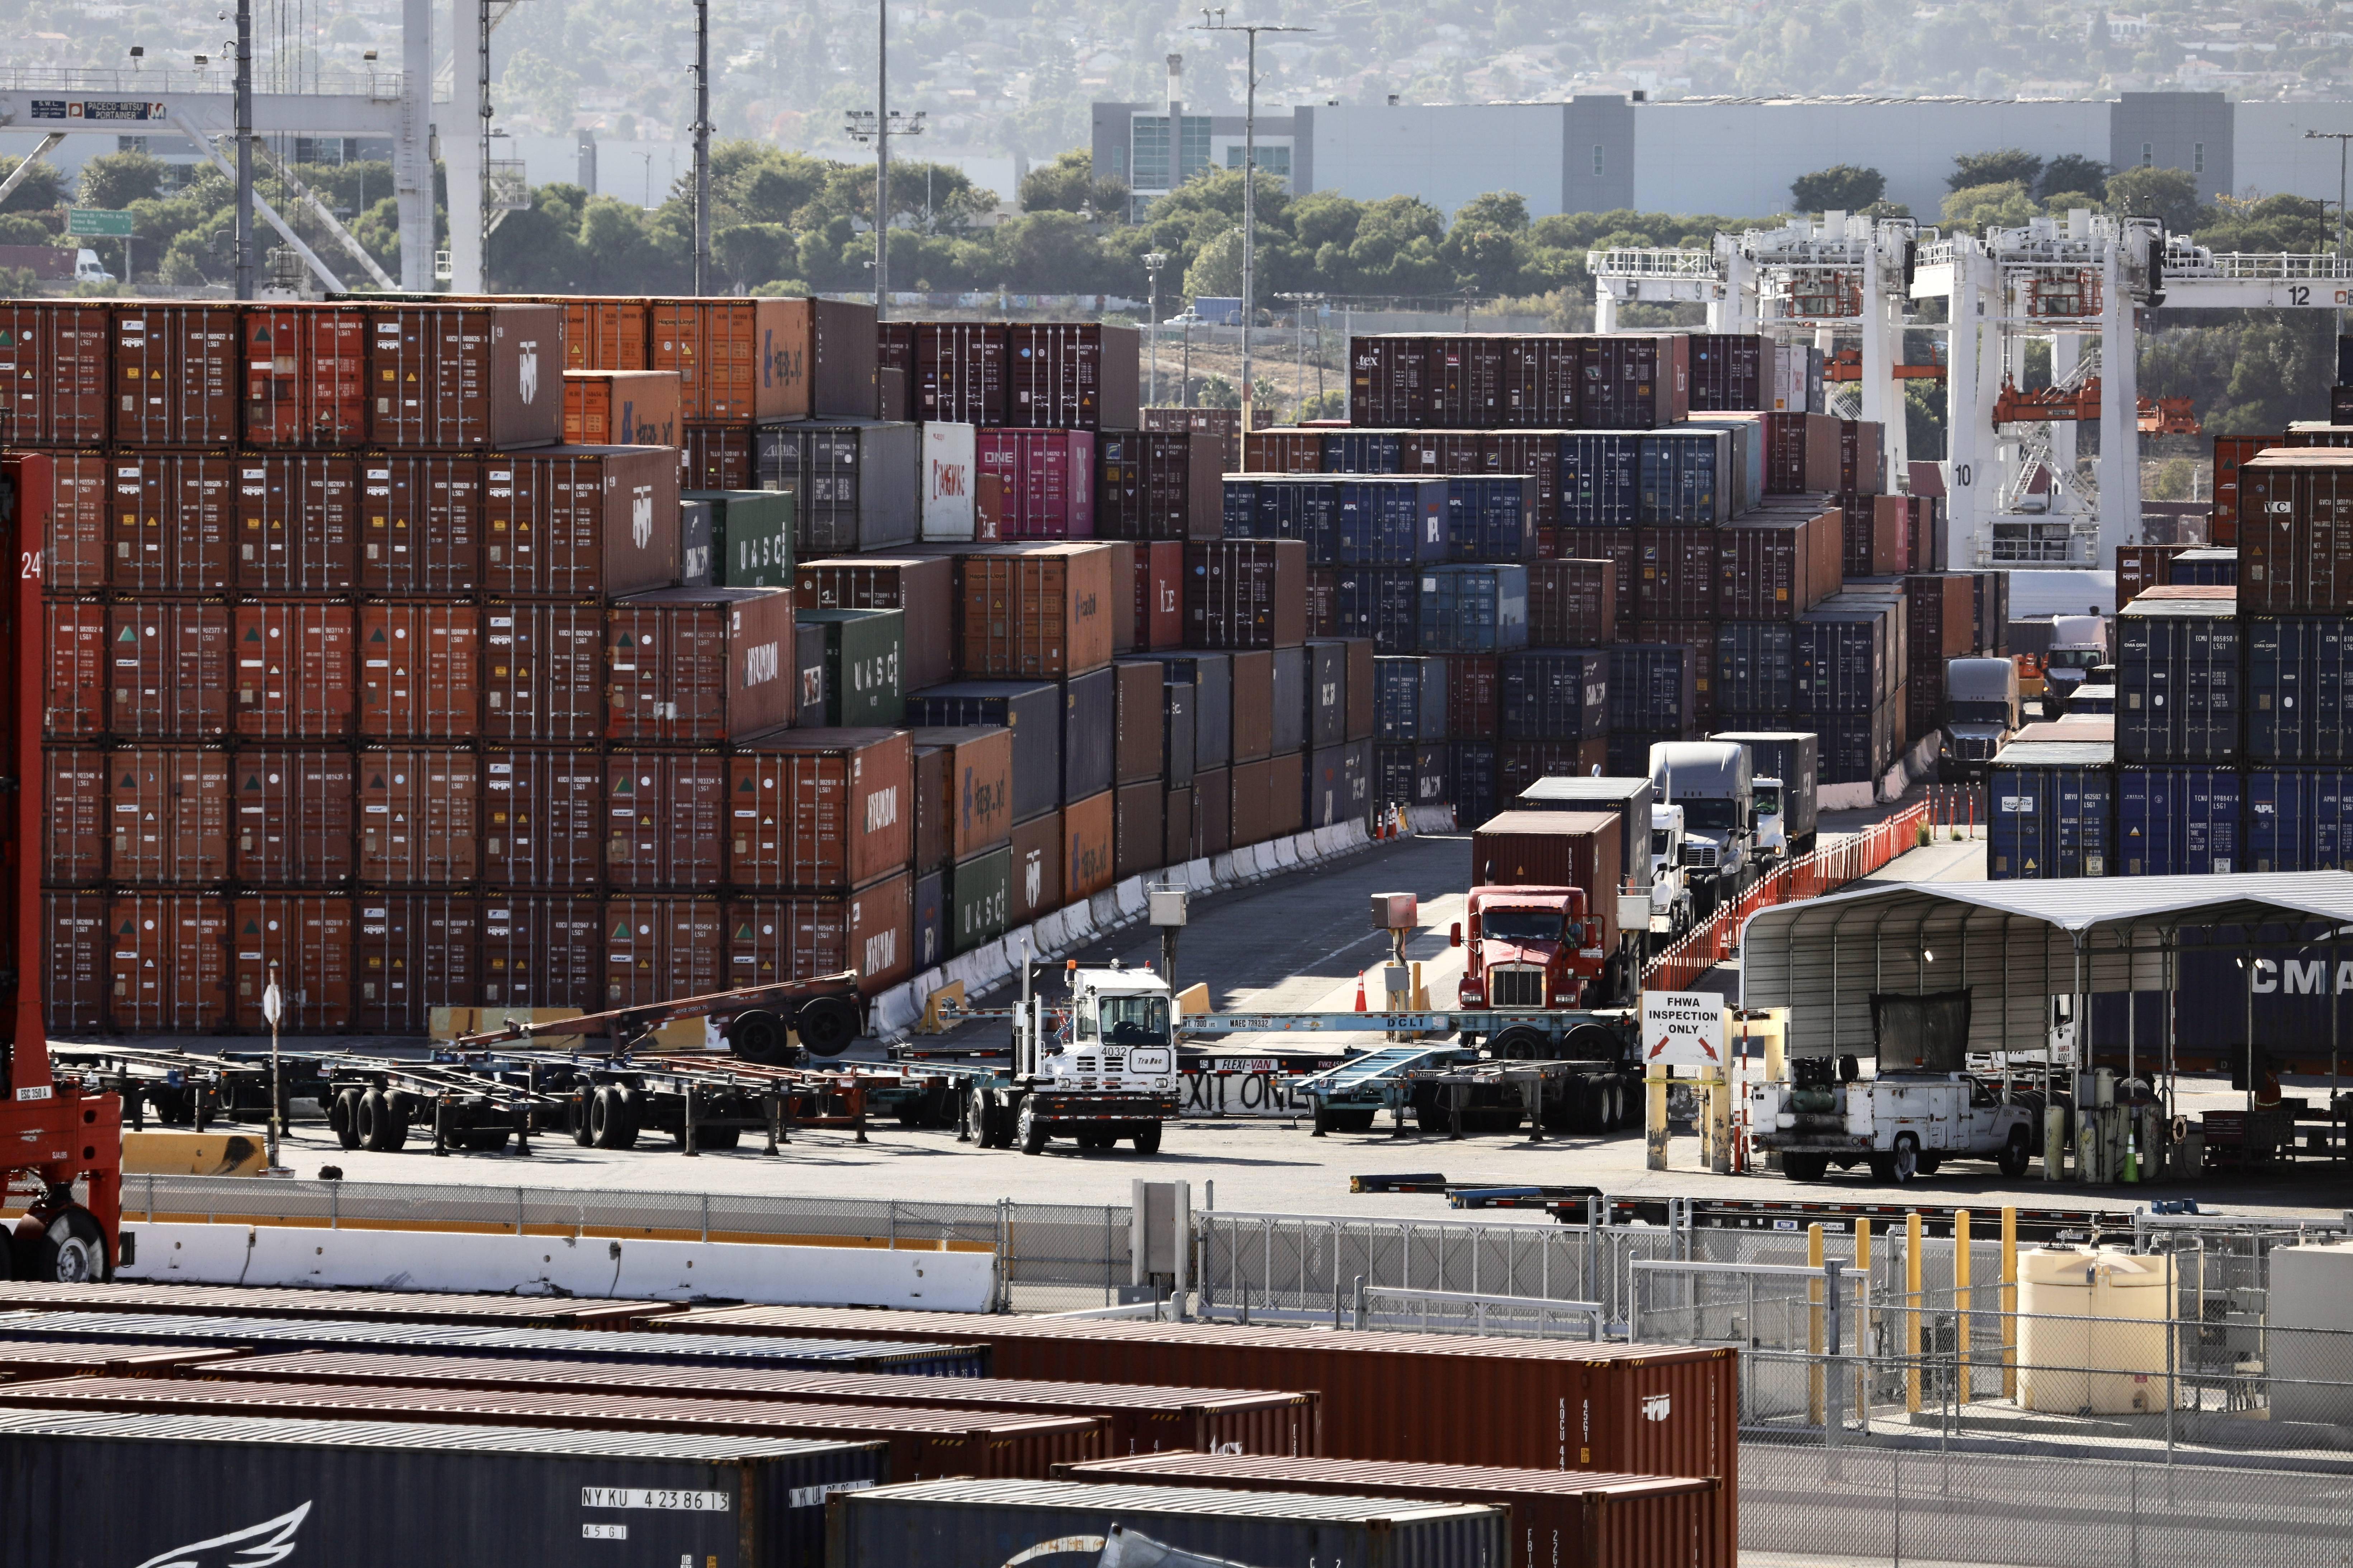 这是10月29日在美国加利福尼亚州洛杉矶港拍摄的装满了集装箱的货船